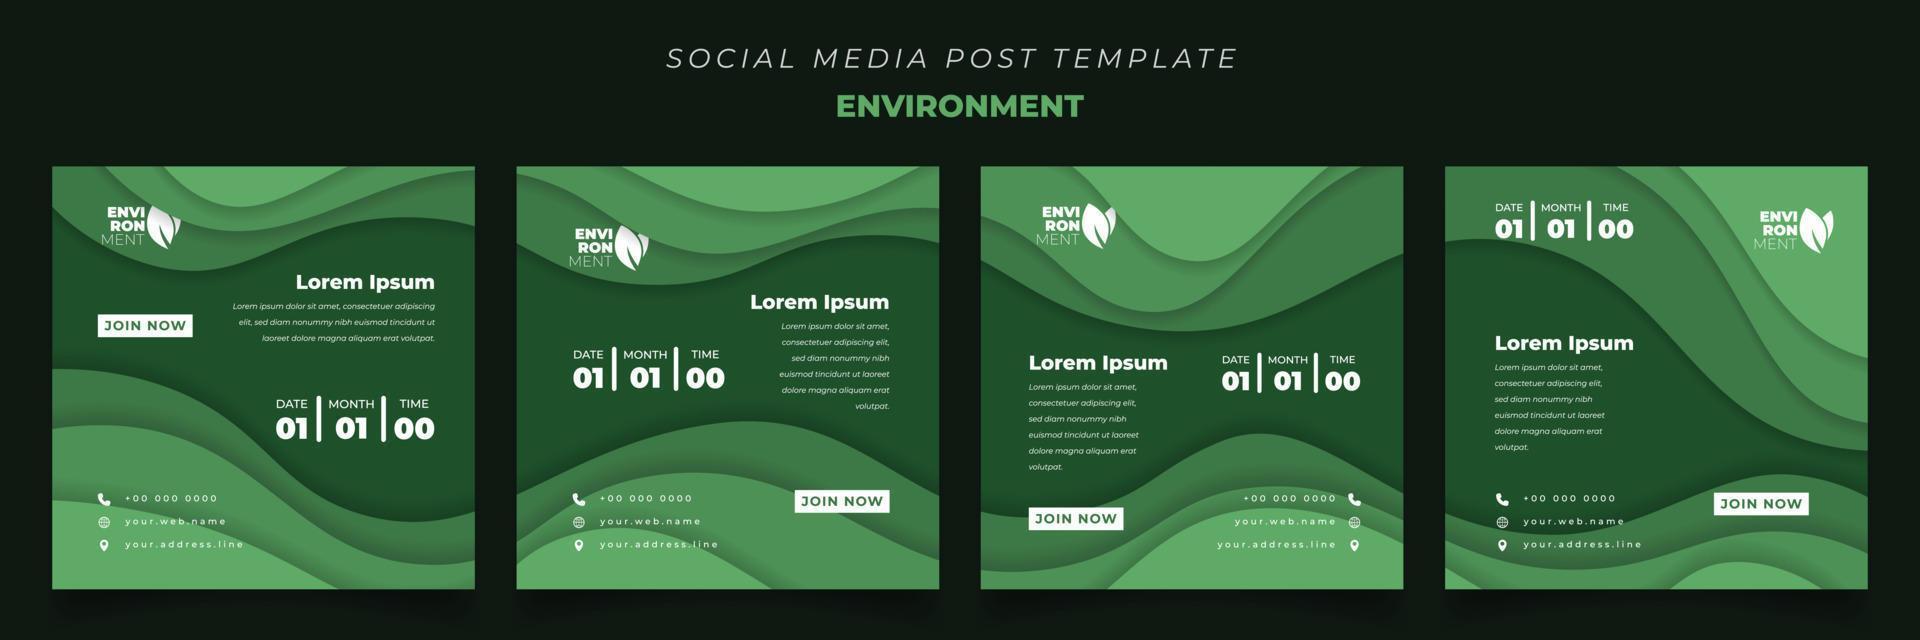 sociala medier mall i kvadrat med grönt pappersklippt bakgrund för miljö eller naturdesign vektor